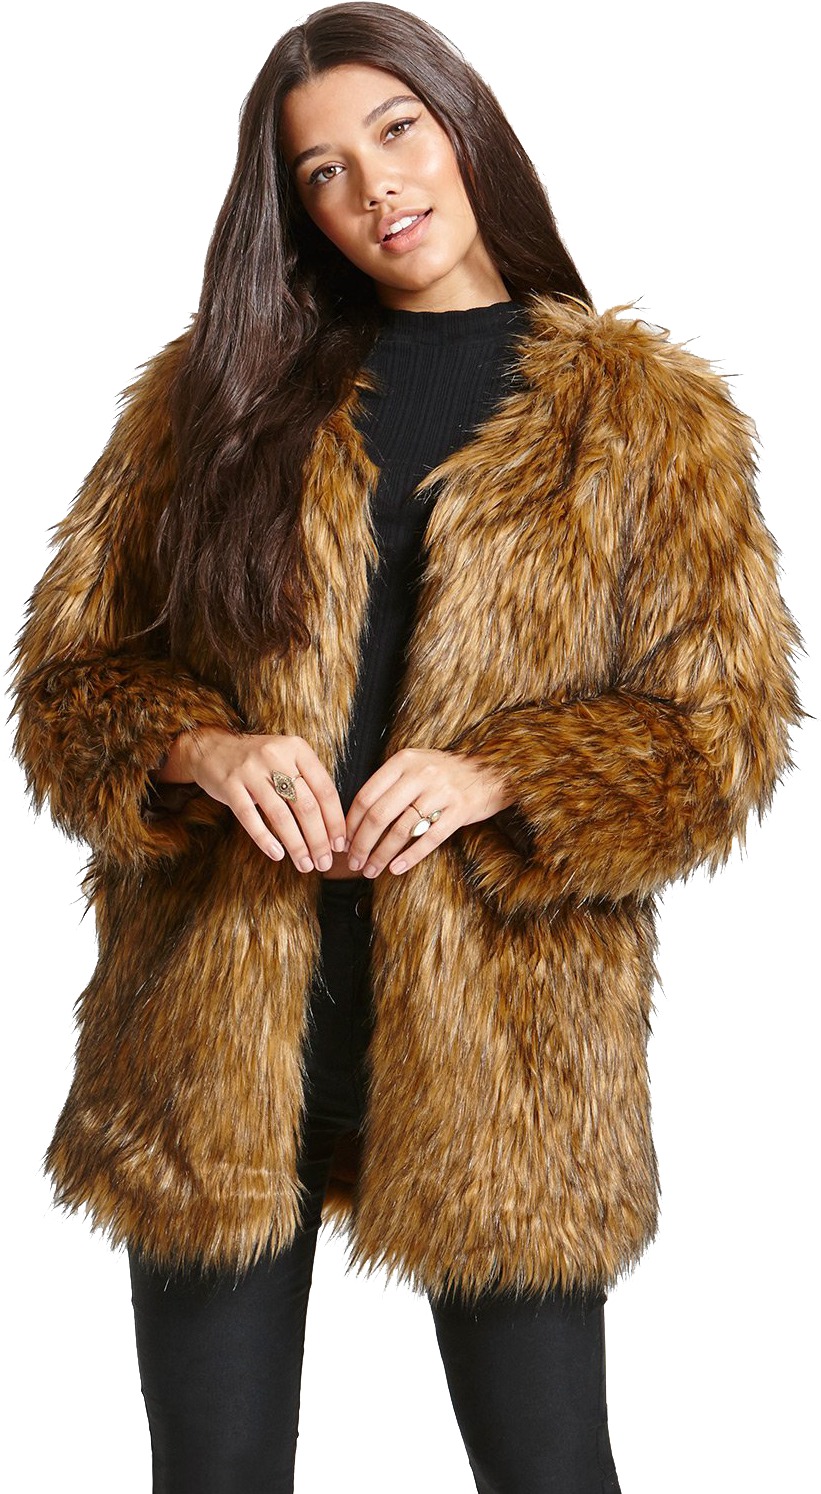 Faux Fur Coat - Brown Faux Fur Coat Womens (1000x1500), Png Download